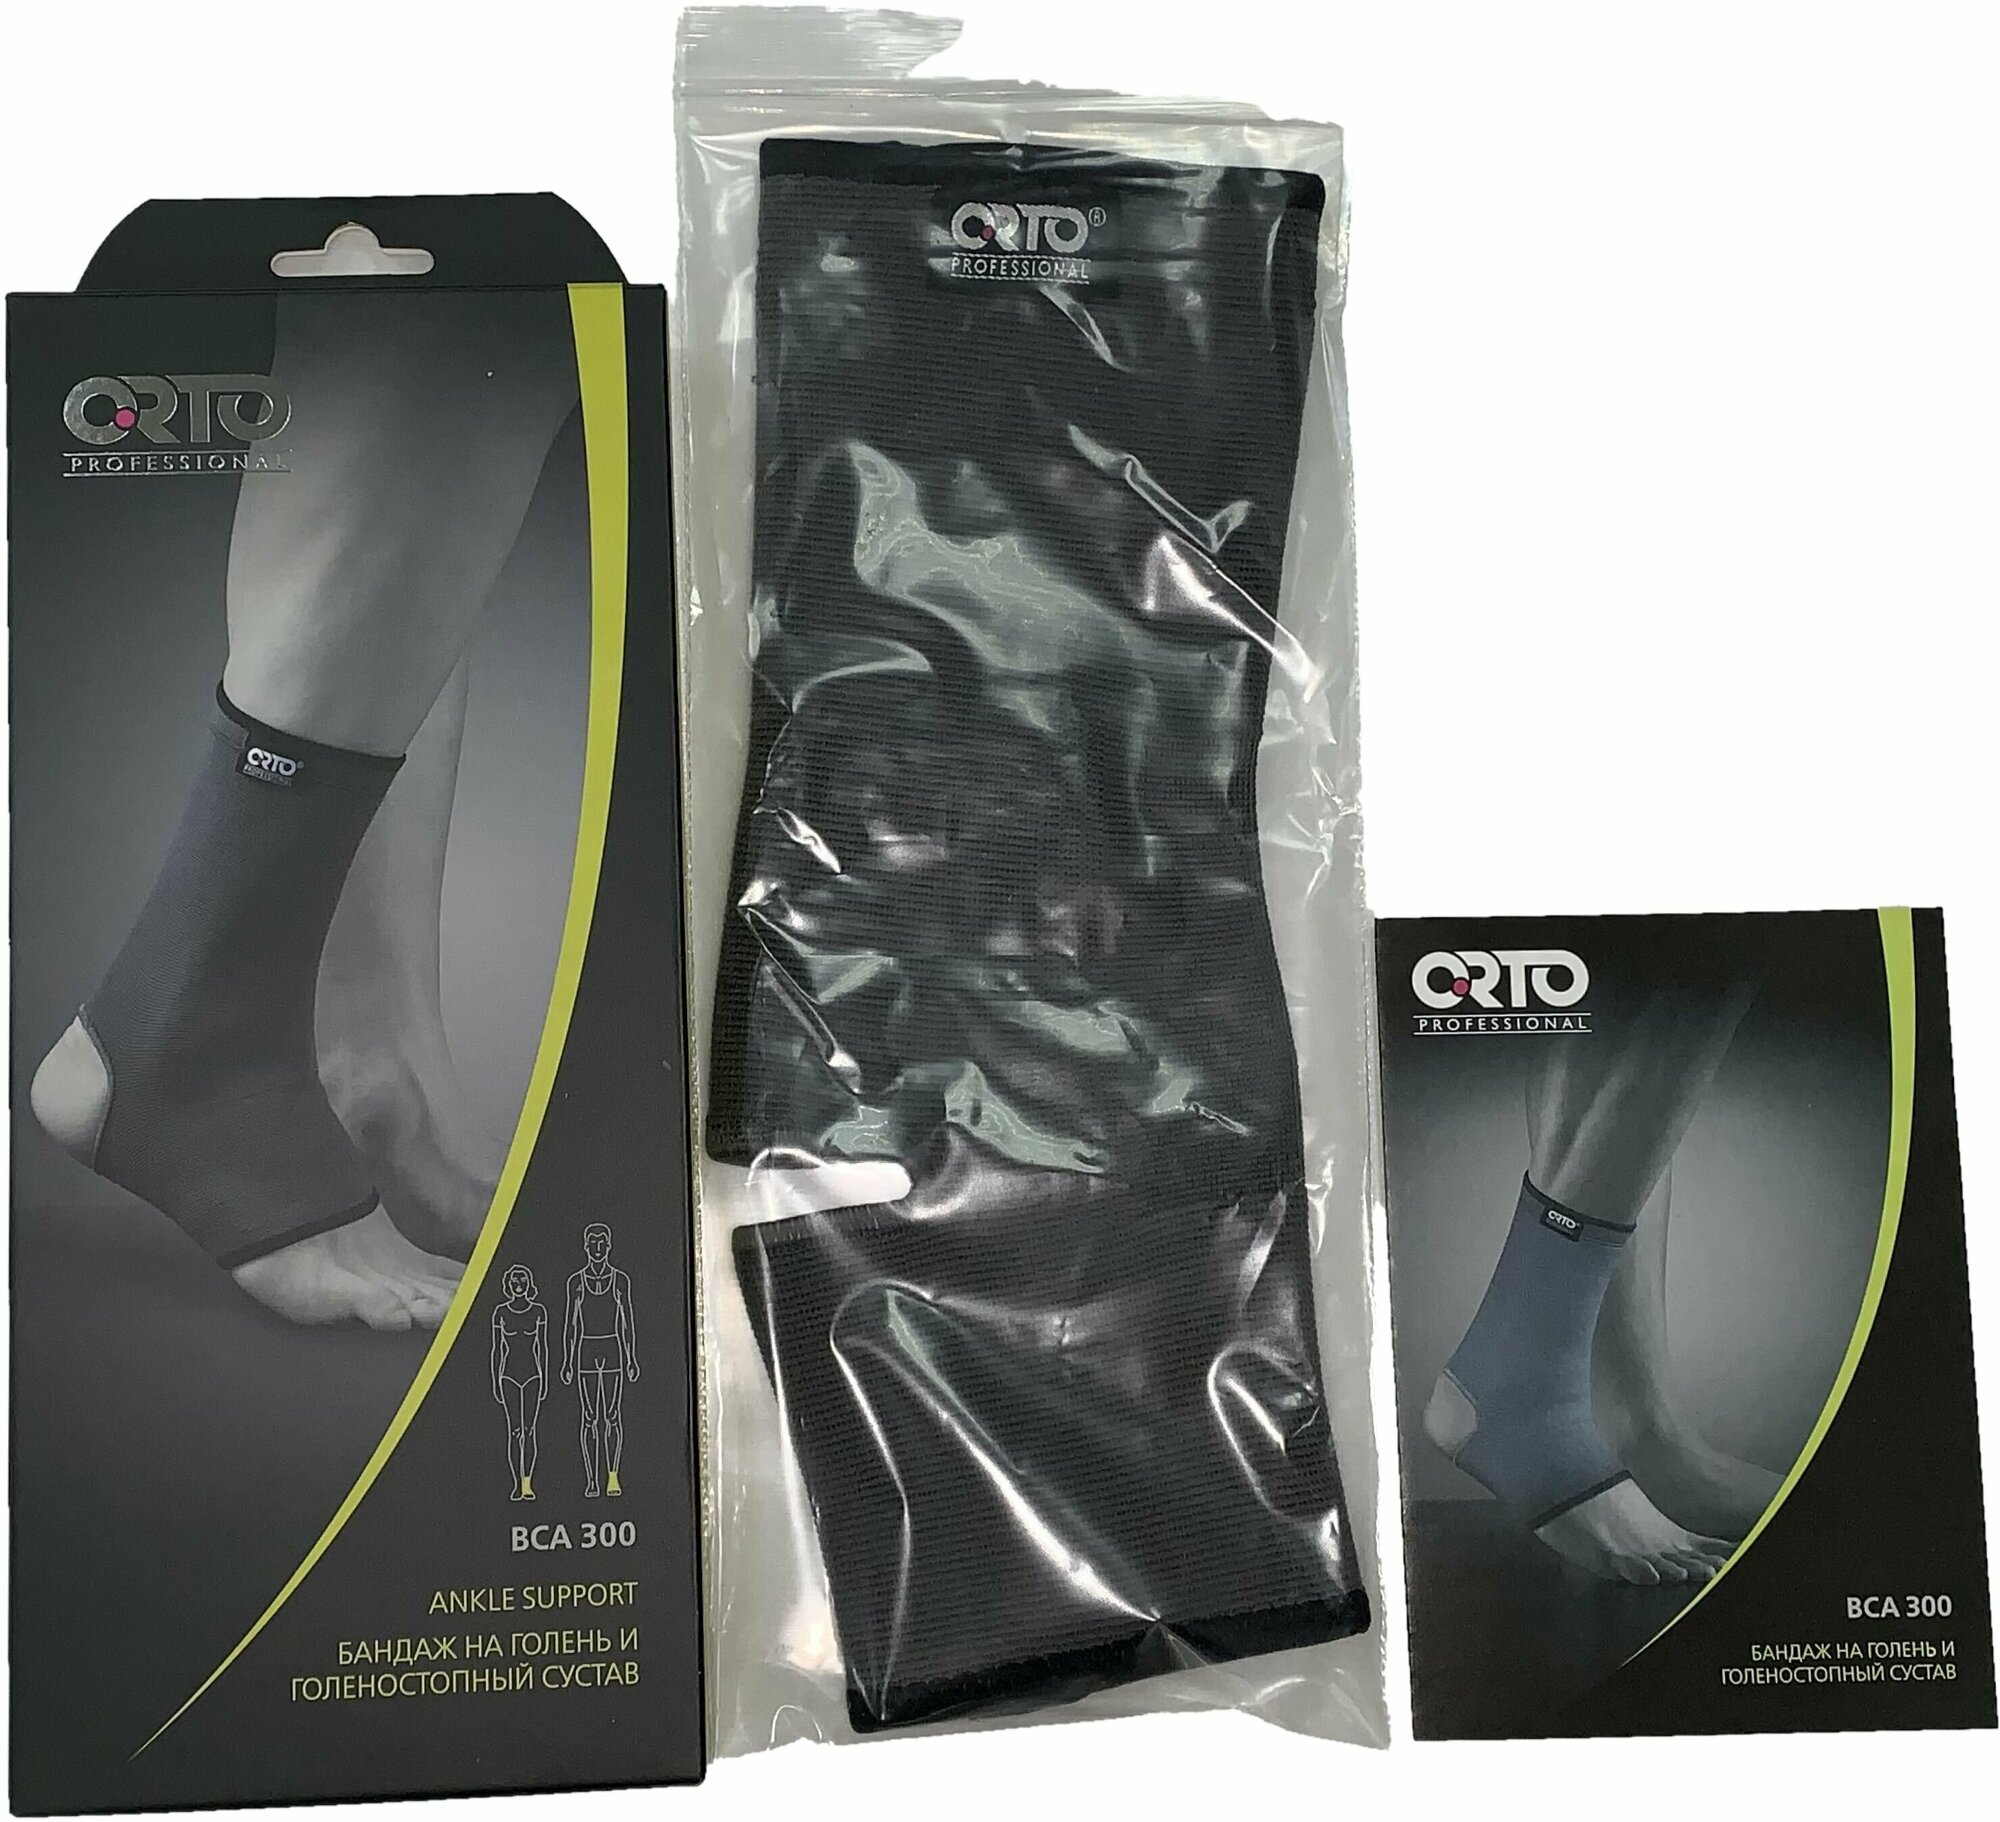 Бандаж на голень и голеностопный сустав Orto Professional BCA 300 с мягким согревающим эффектом, размер L